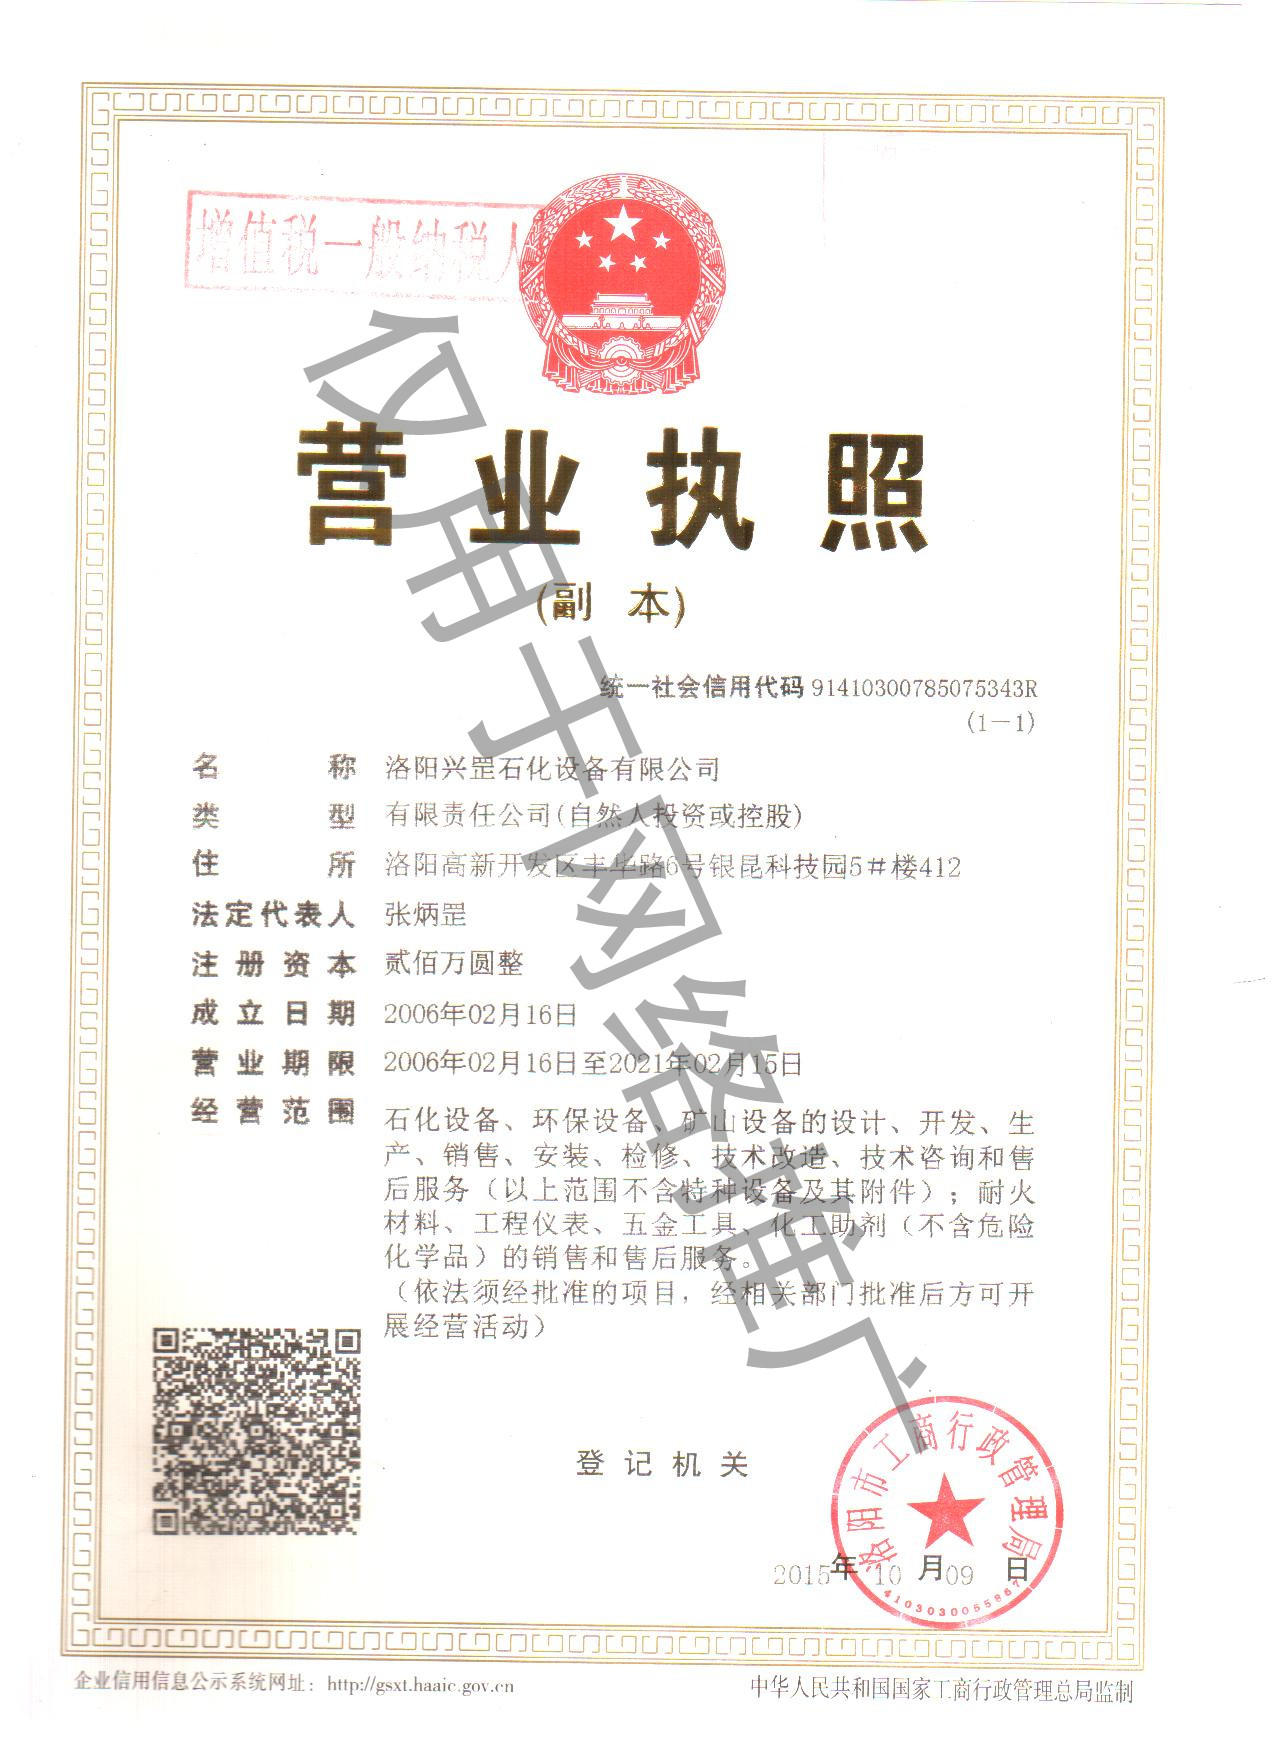 興罡石化營業執照